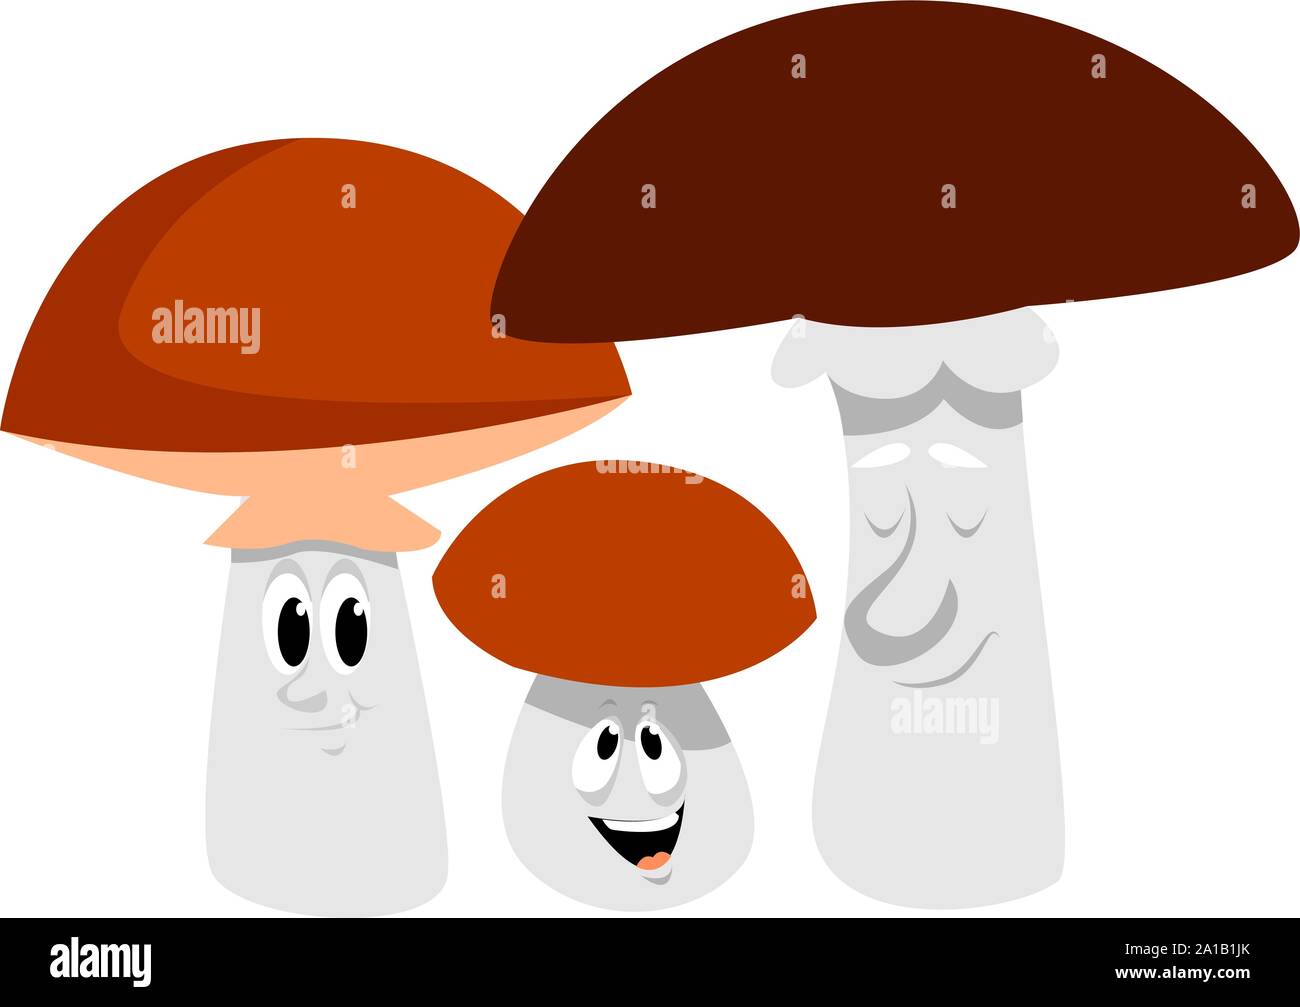 Mushroom family, illustration, vector on white background. Stock Vector